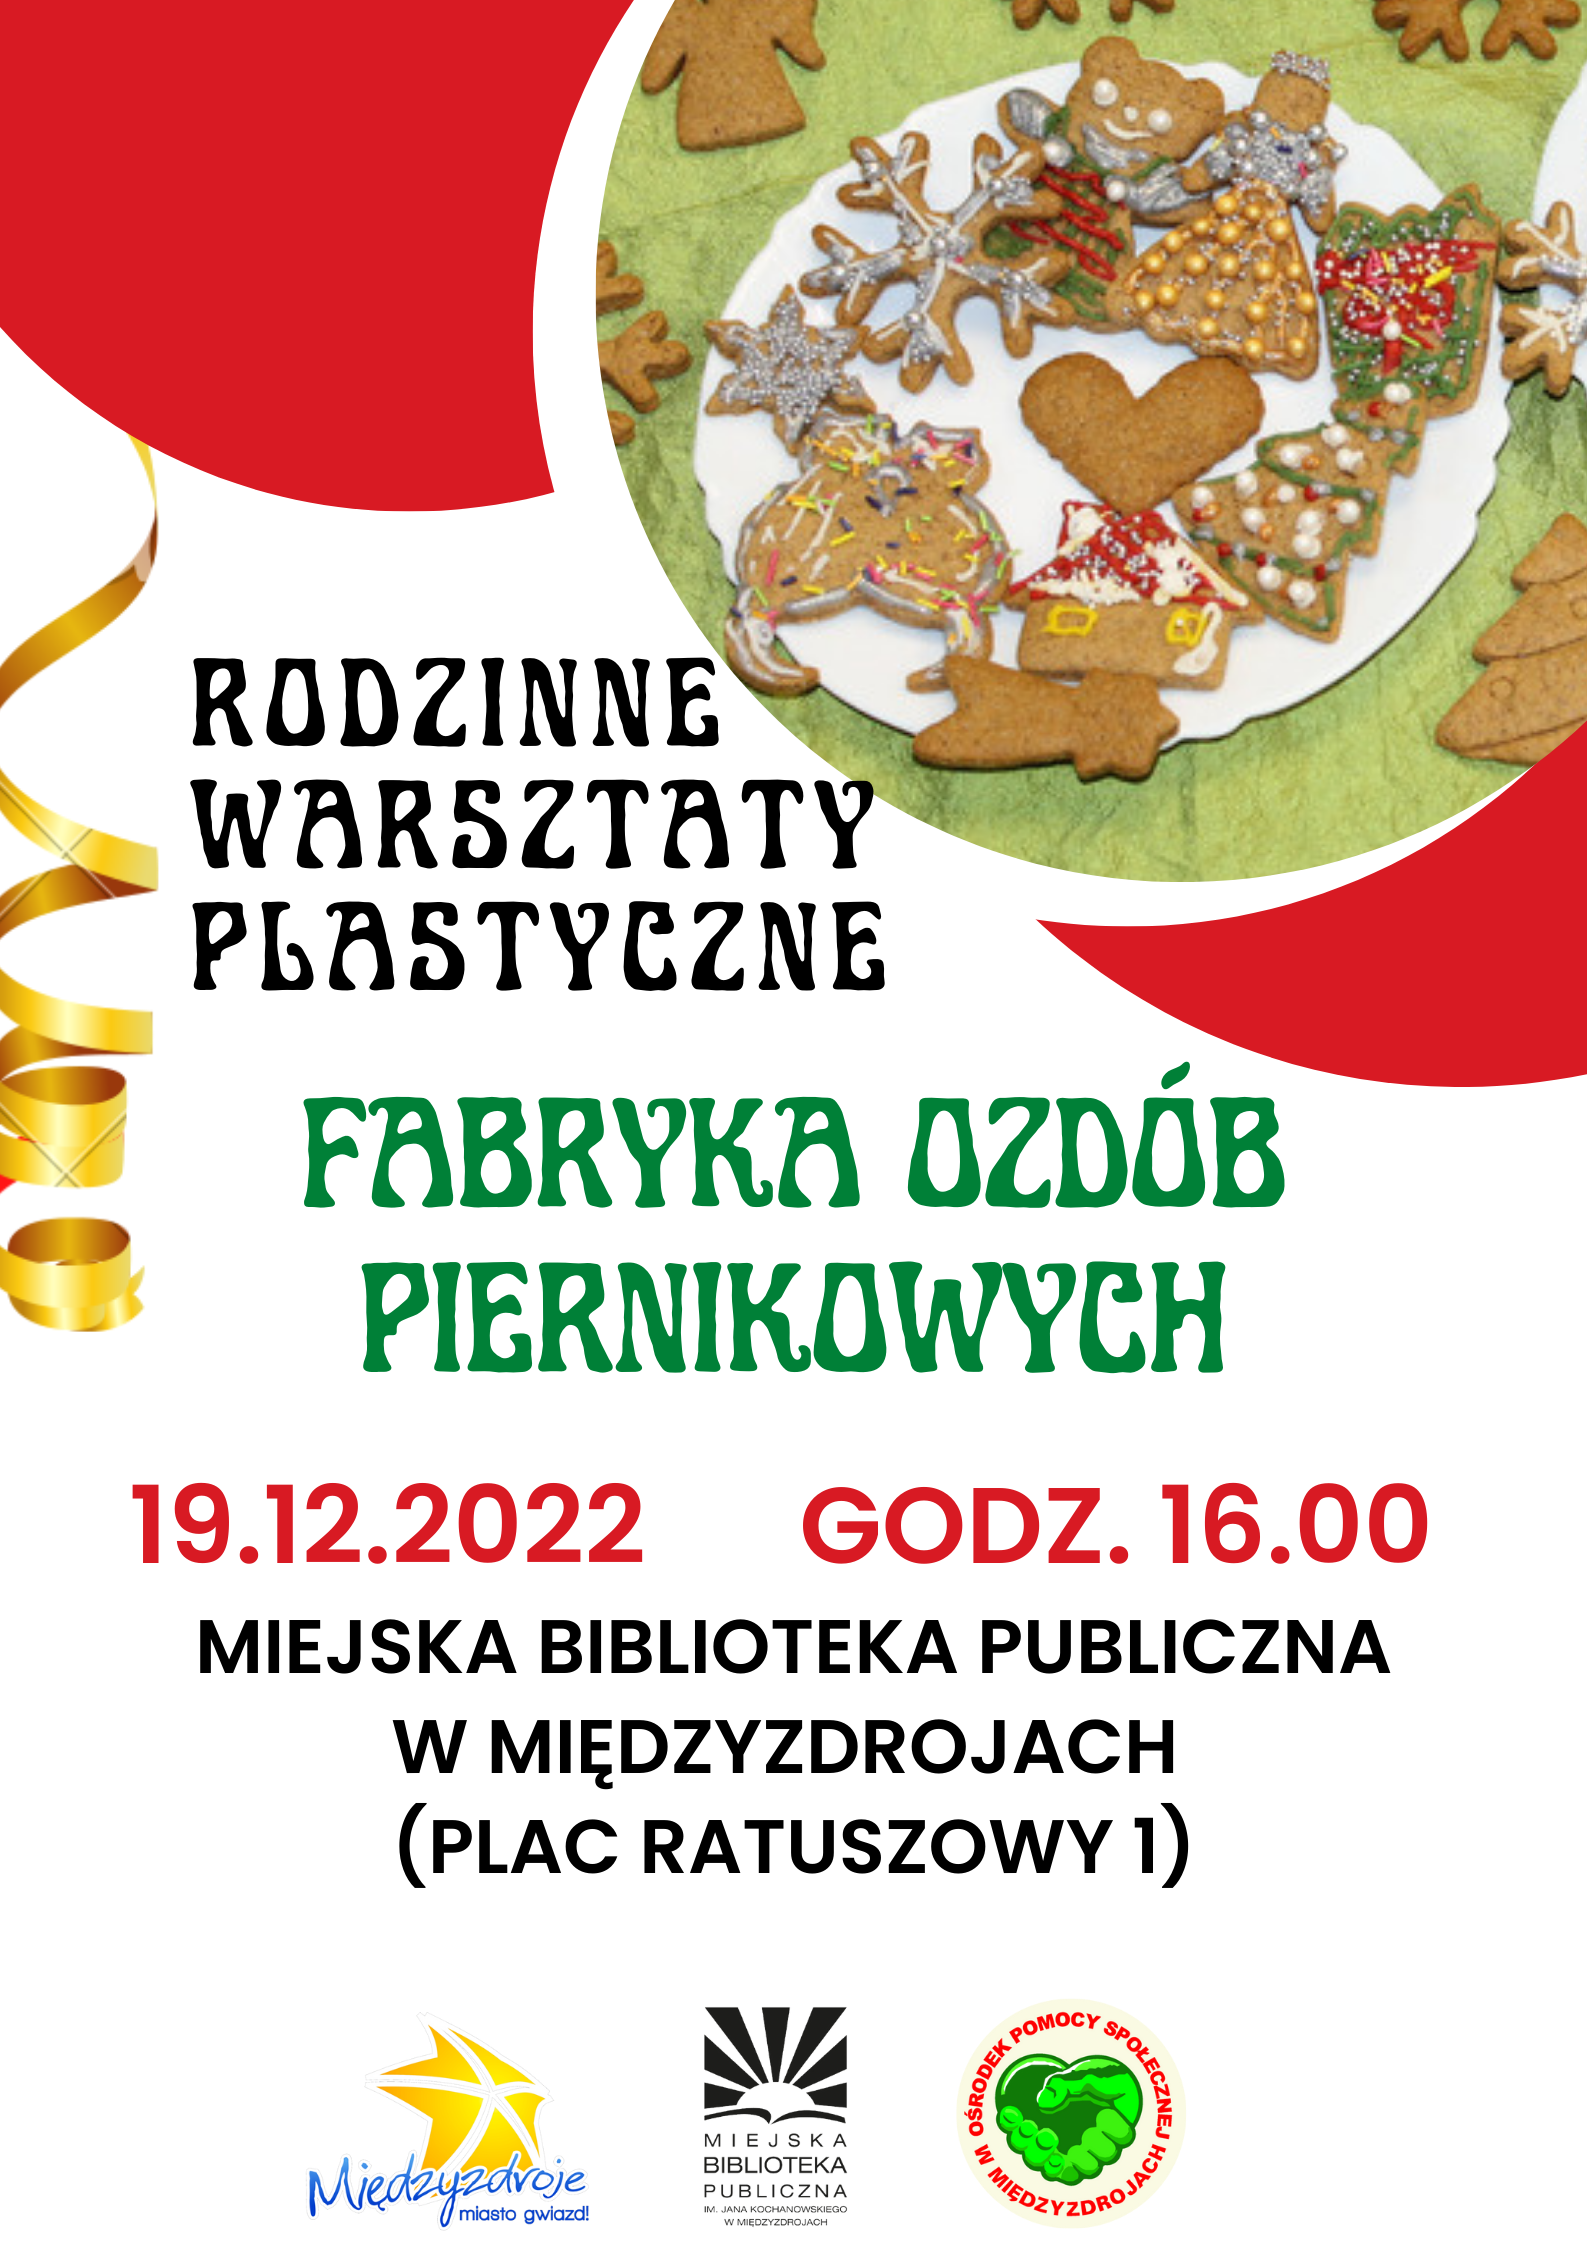 Rodzinne warsztaty plastyczne pt. ”Fabryka ozdób piernikowych” 19 grudnia 2022 r. - zapowiedź